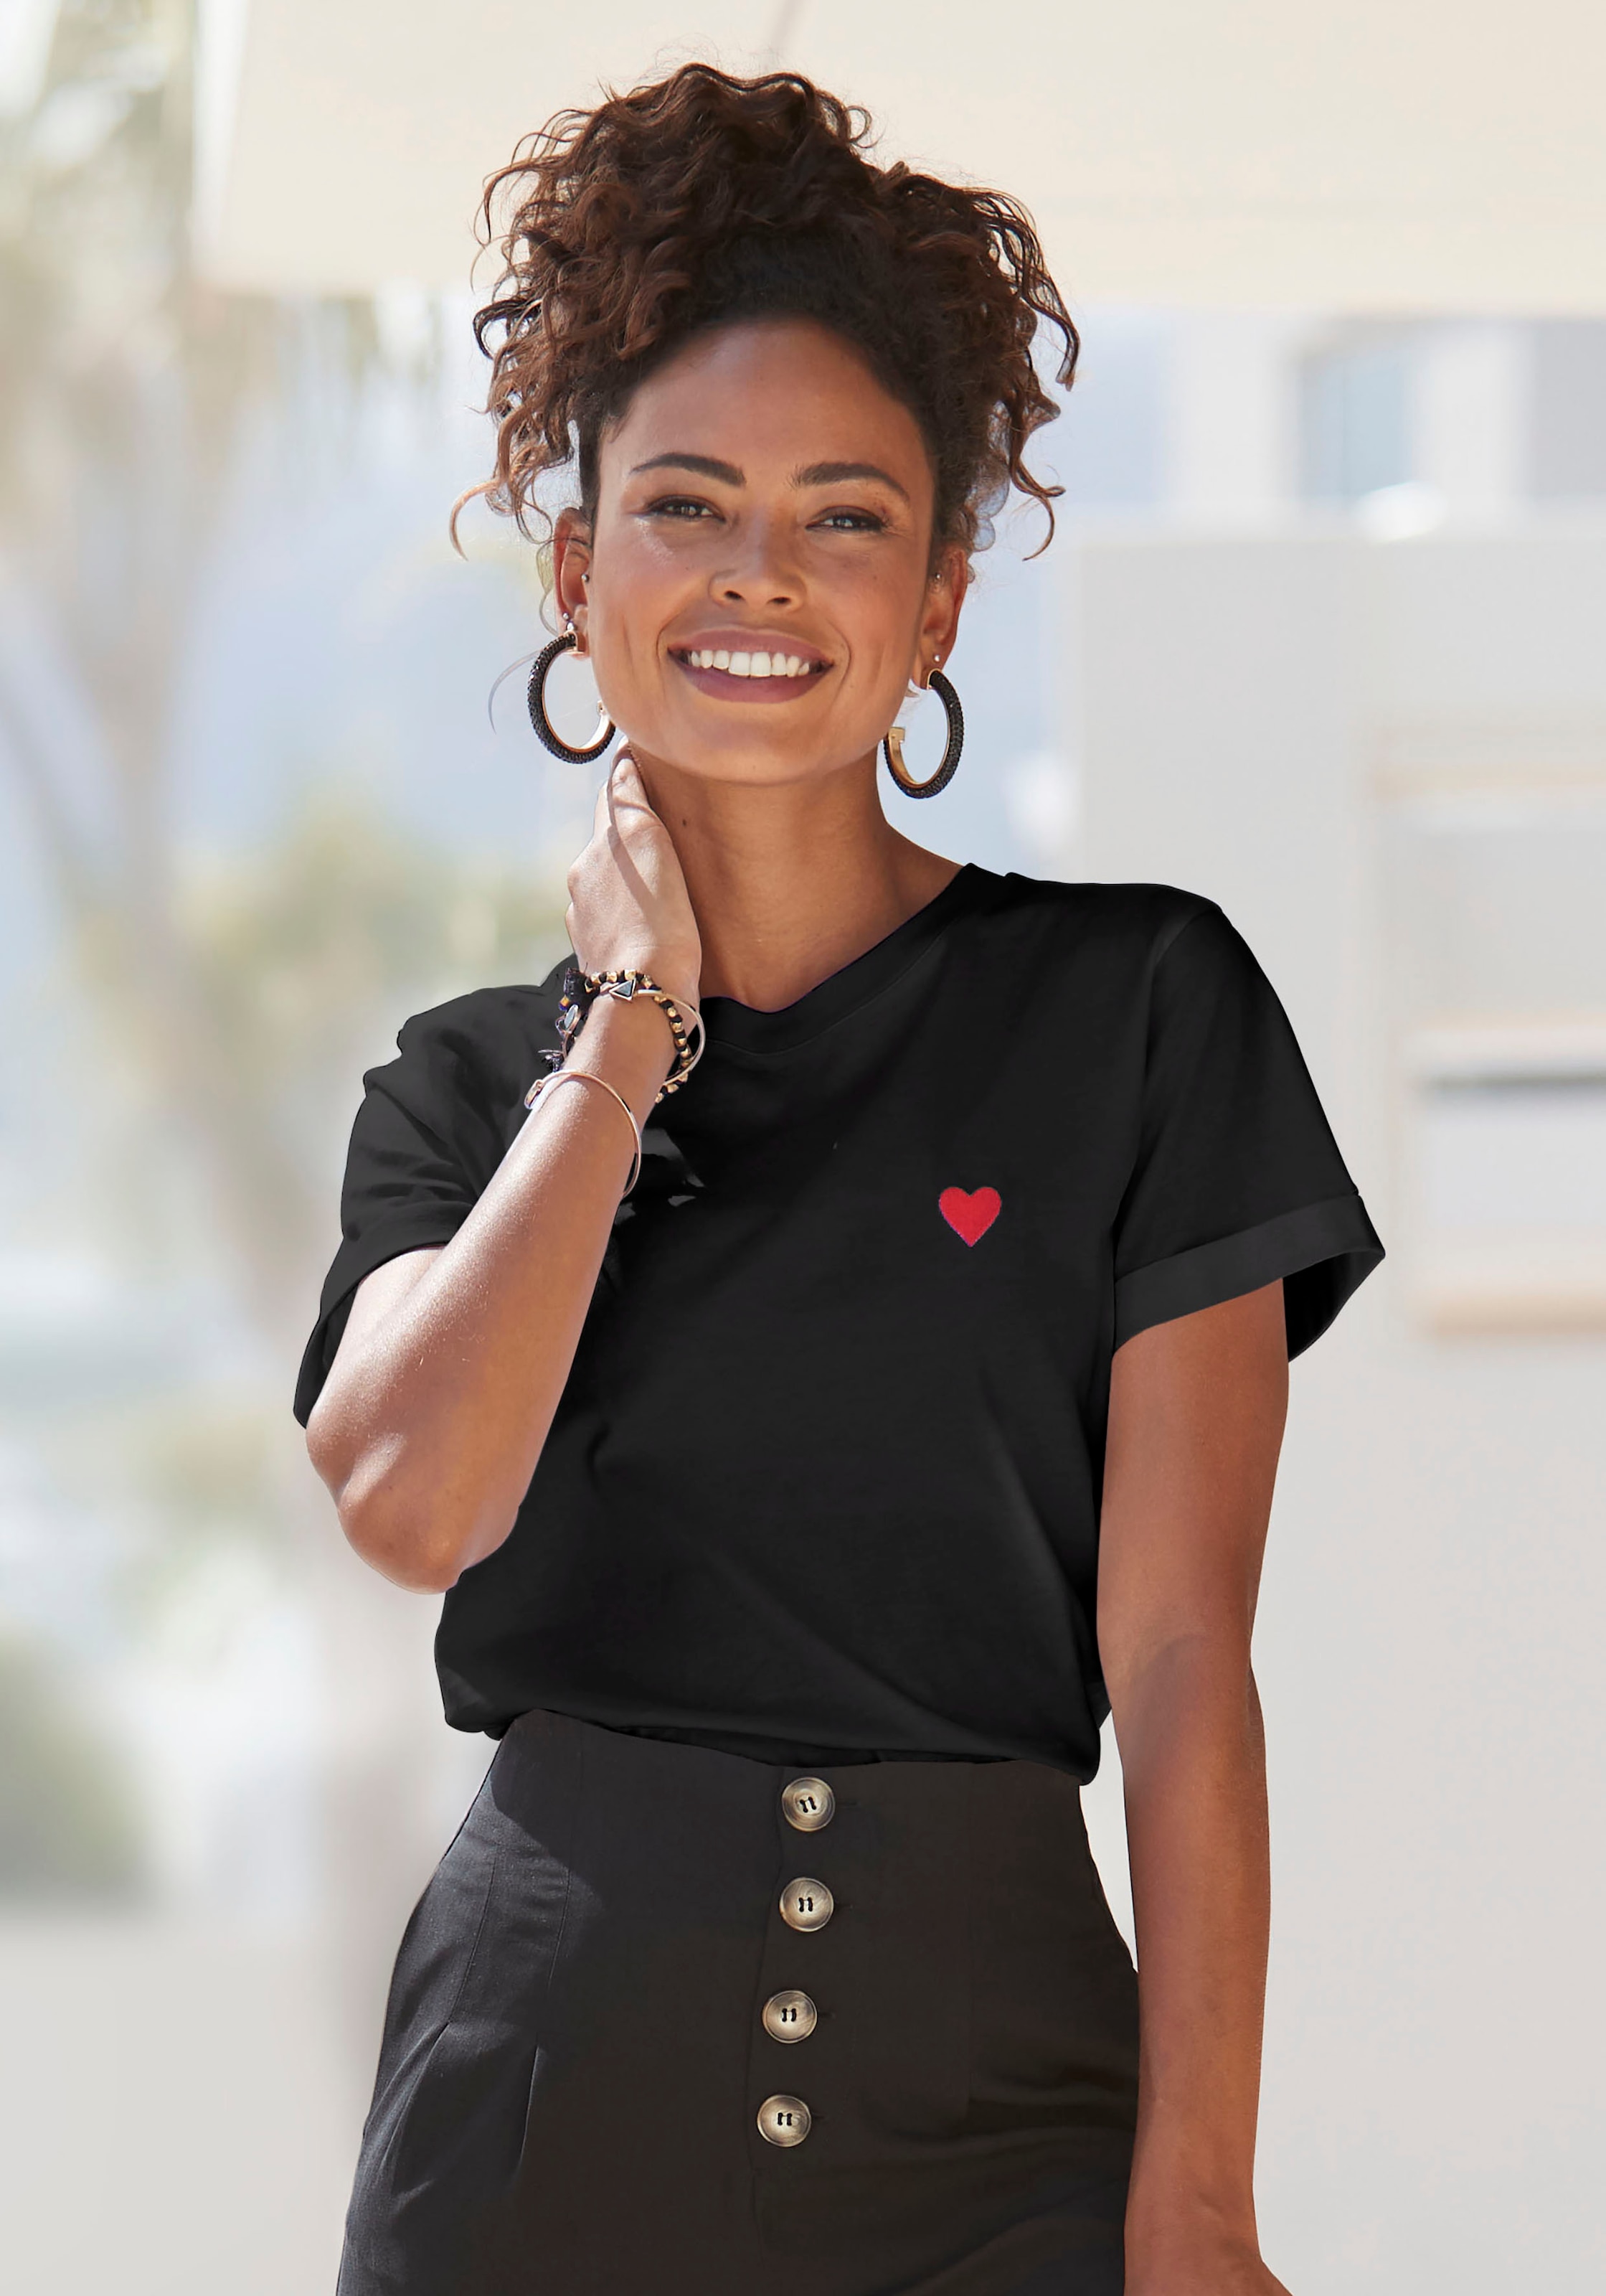 LASCANA T-Shirt, mit süßer Herz-Stickerei, Kurzarmshirt aus Baumwolle